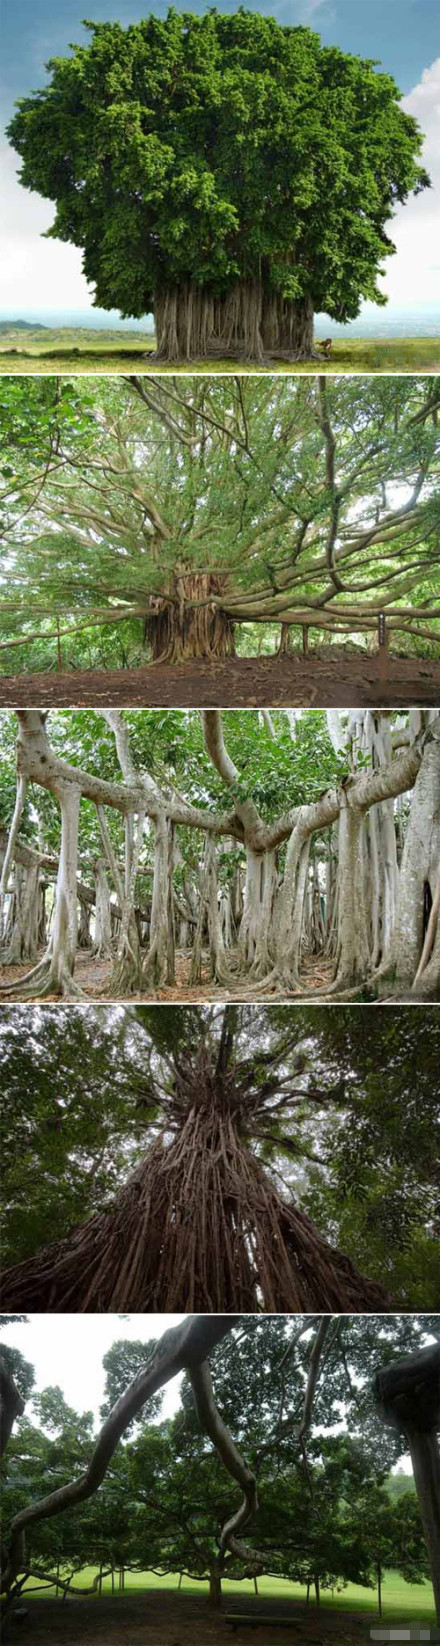 这要数孟加拉的一种榕树,它的树冠可以覆盖十五亩左右的土地,有一个半